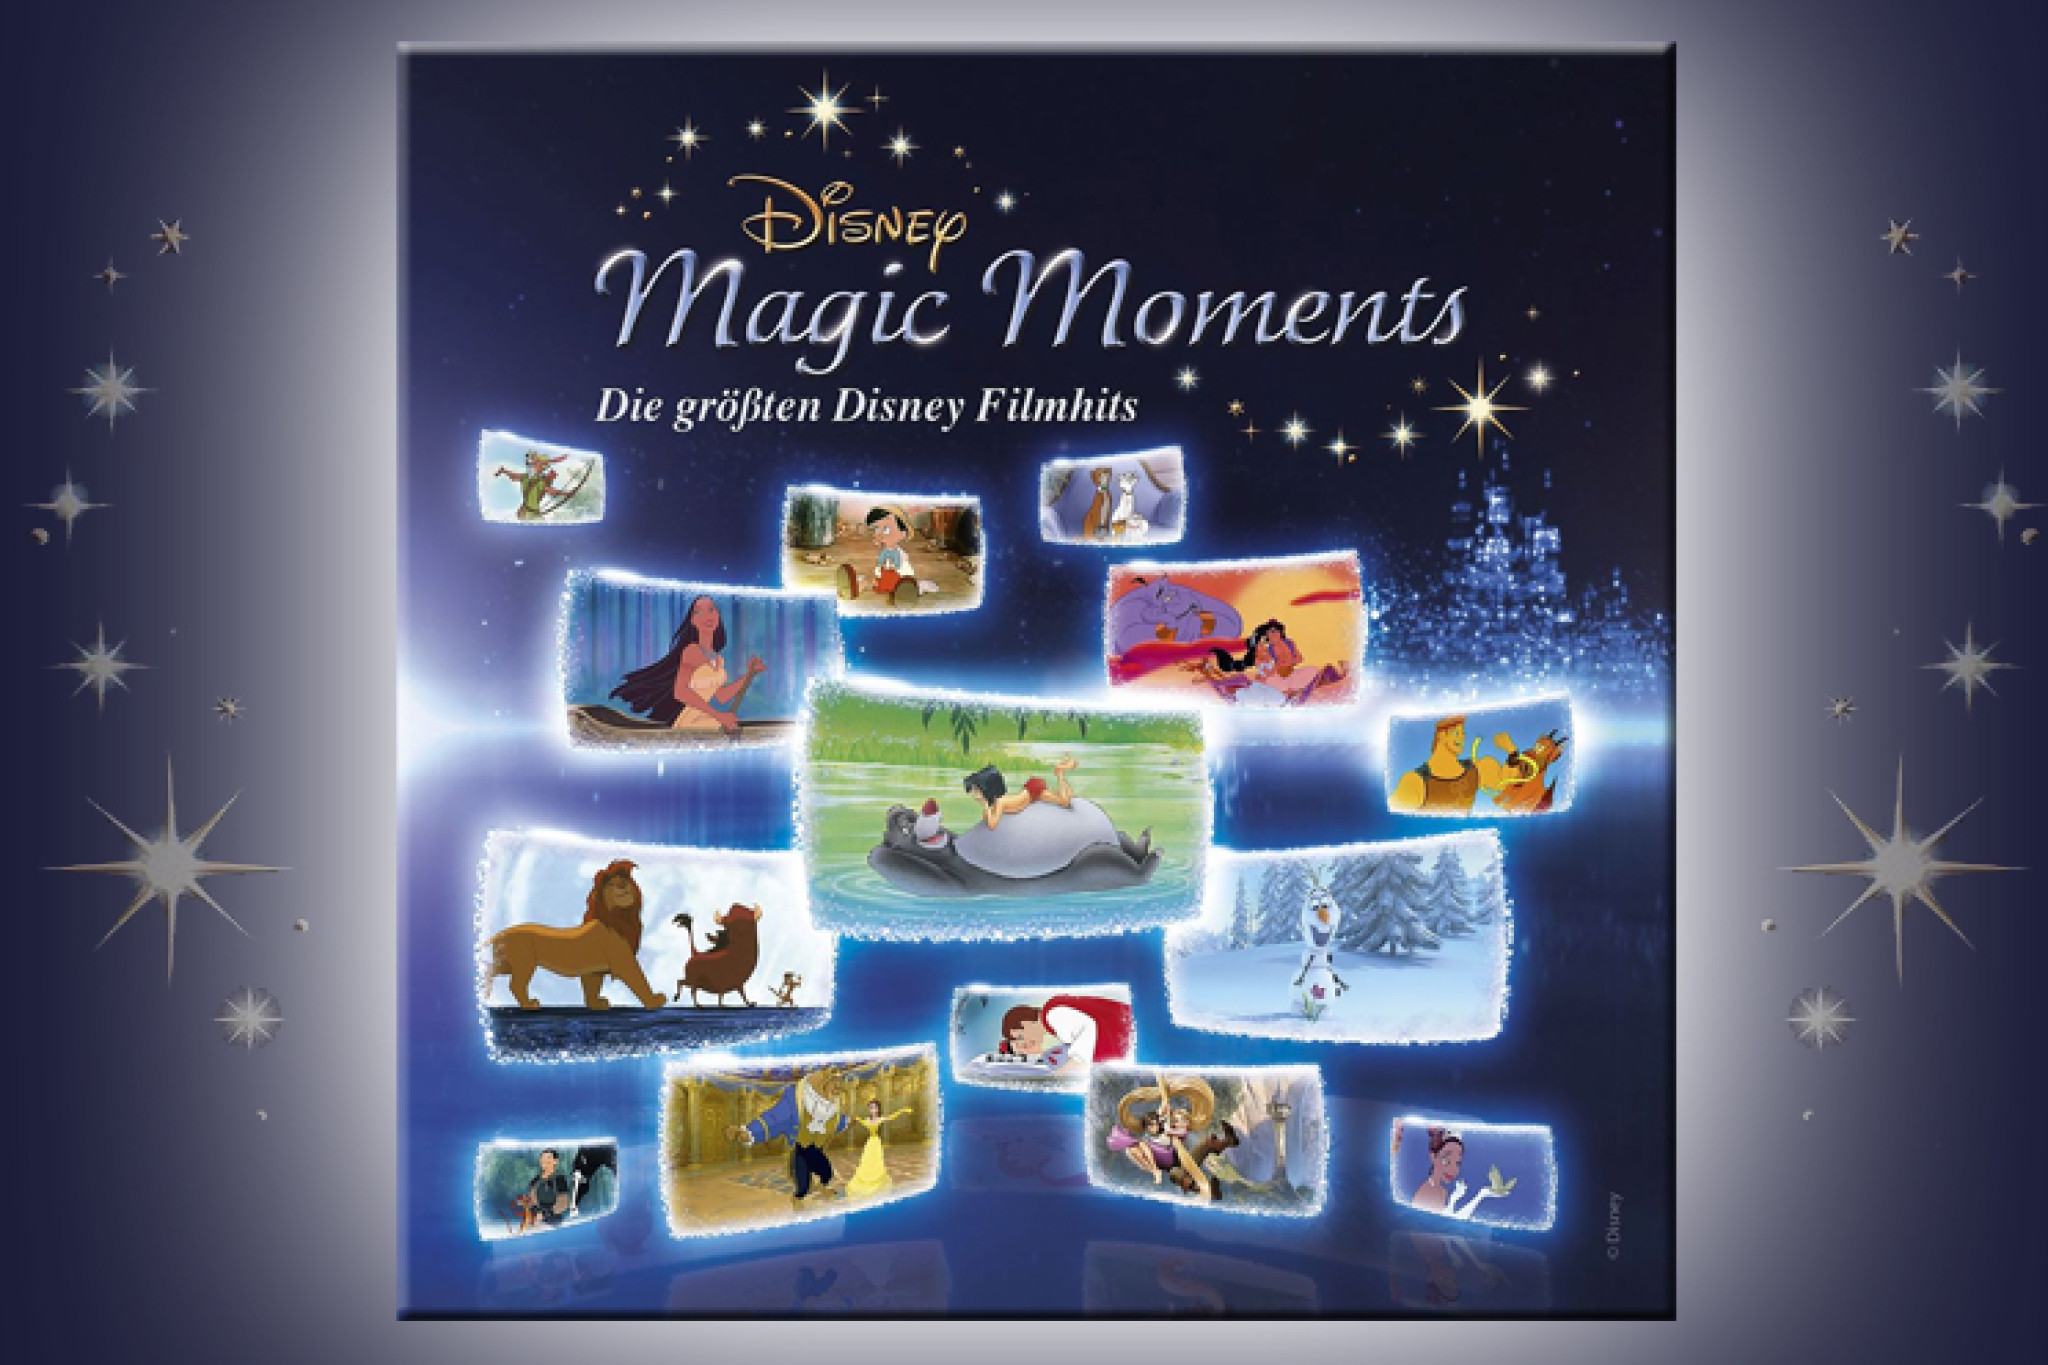 Die "Disney Magic Moments" mit den größten Disney-Filmhits